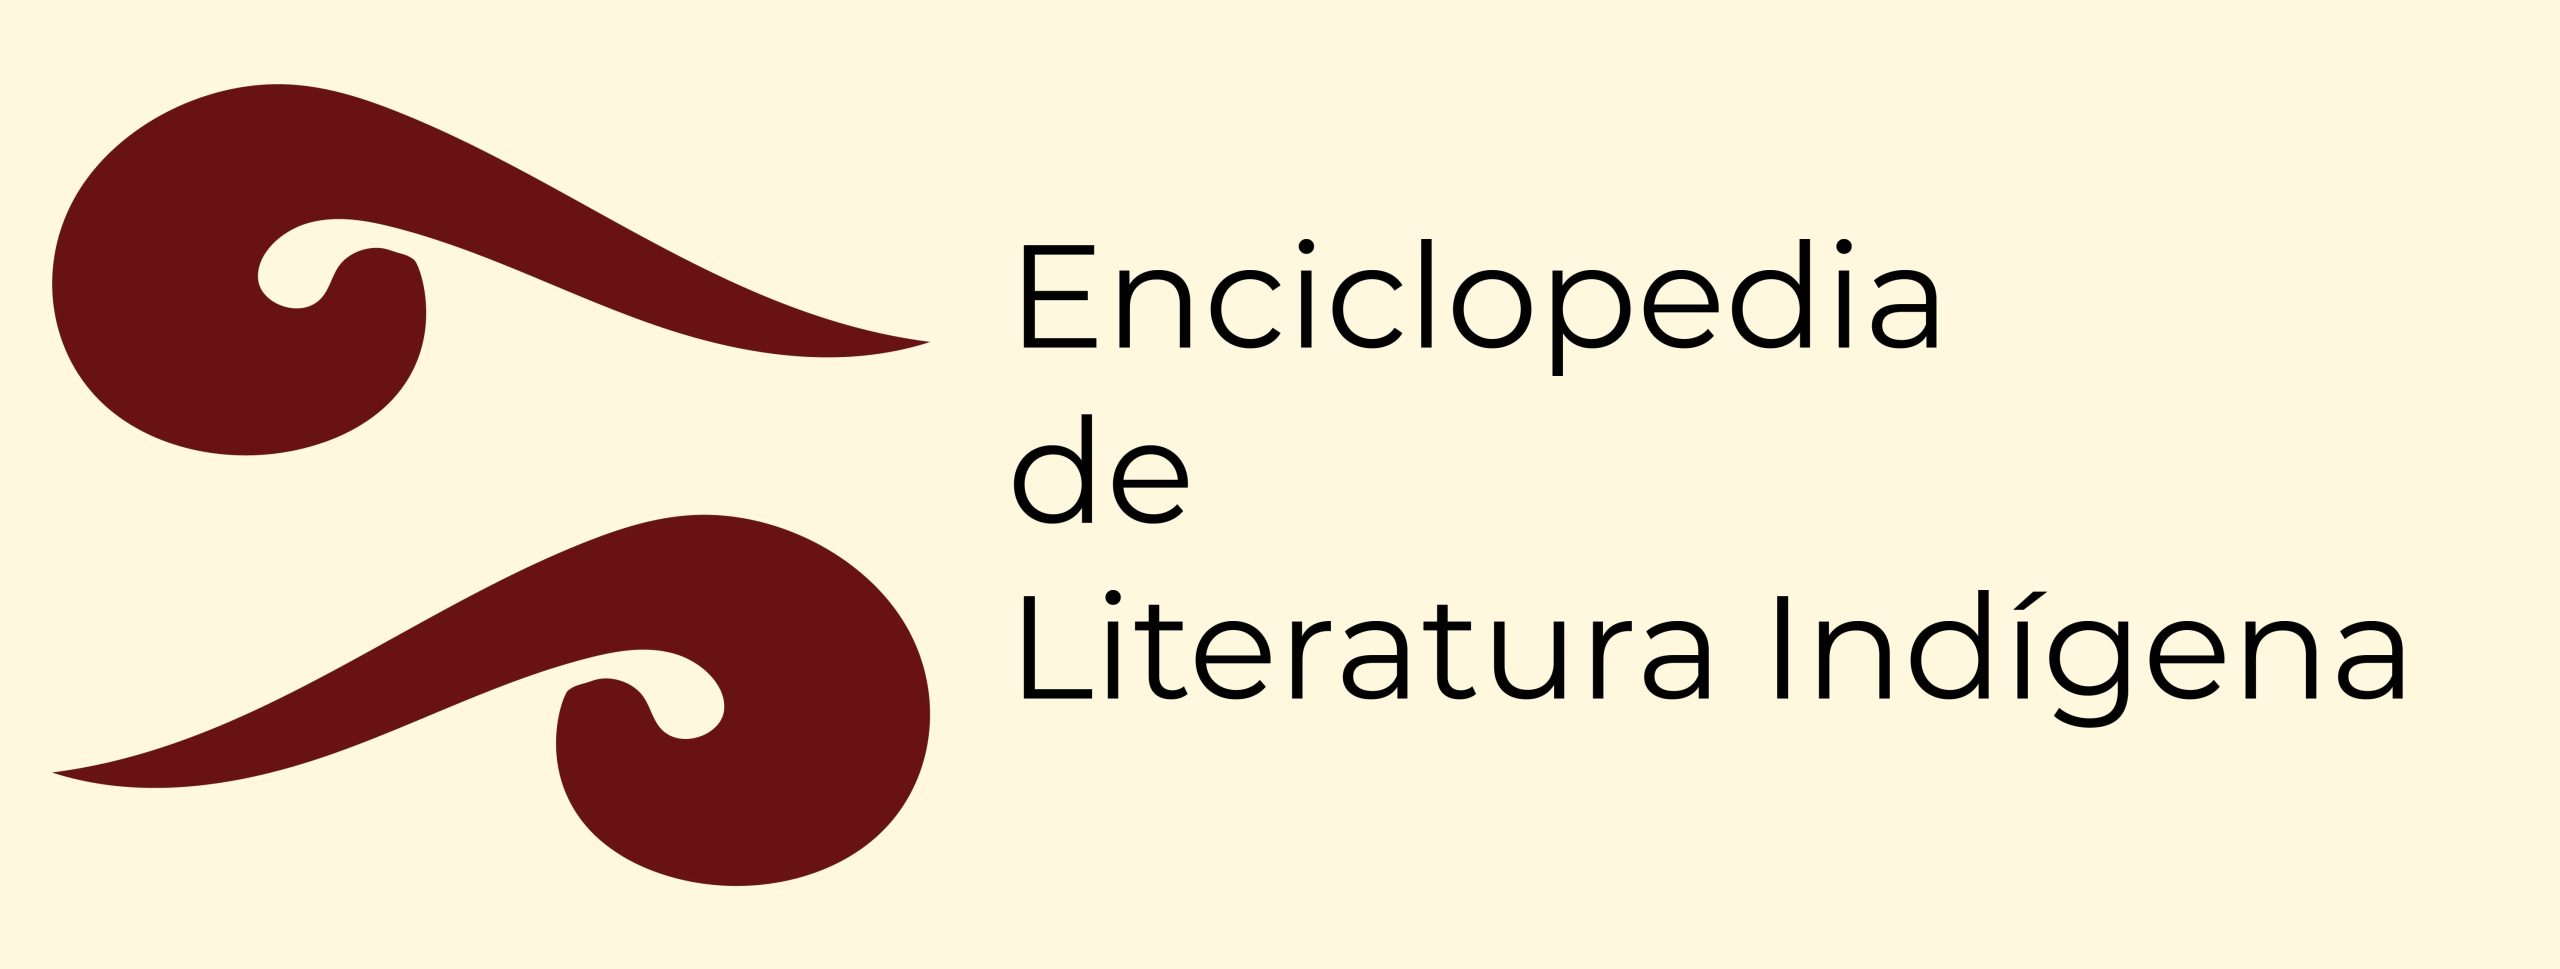 Enciclopedia de Literatura Indígena